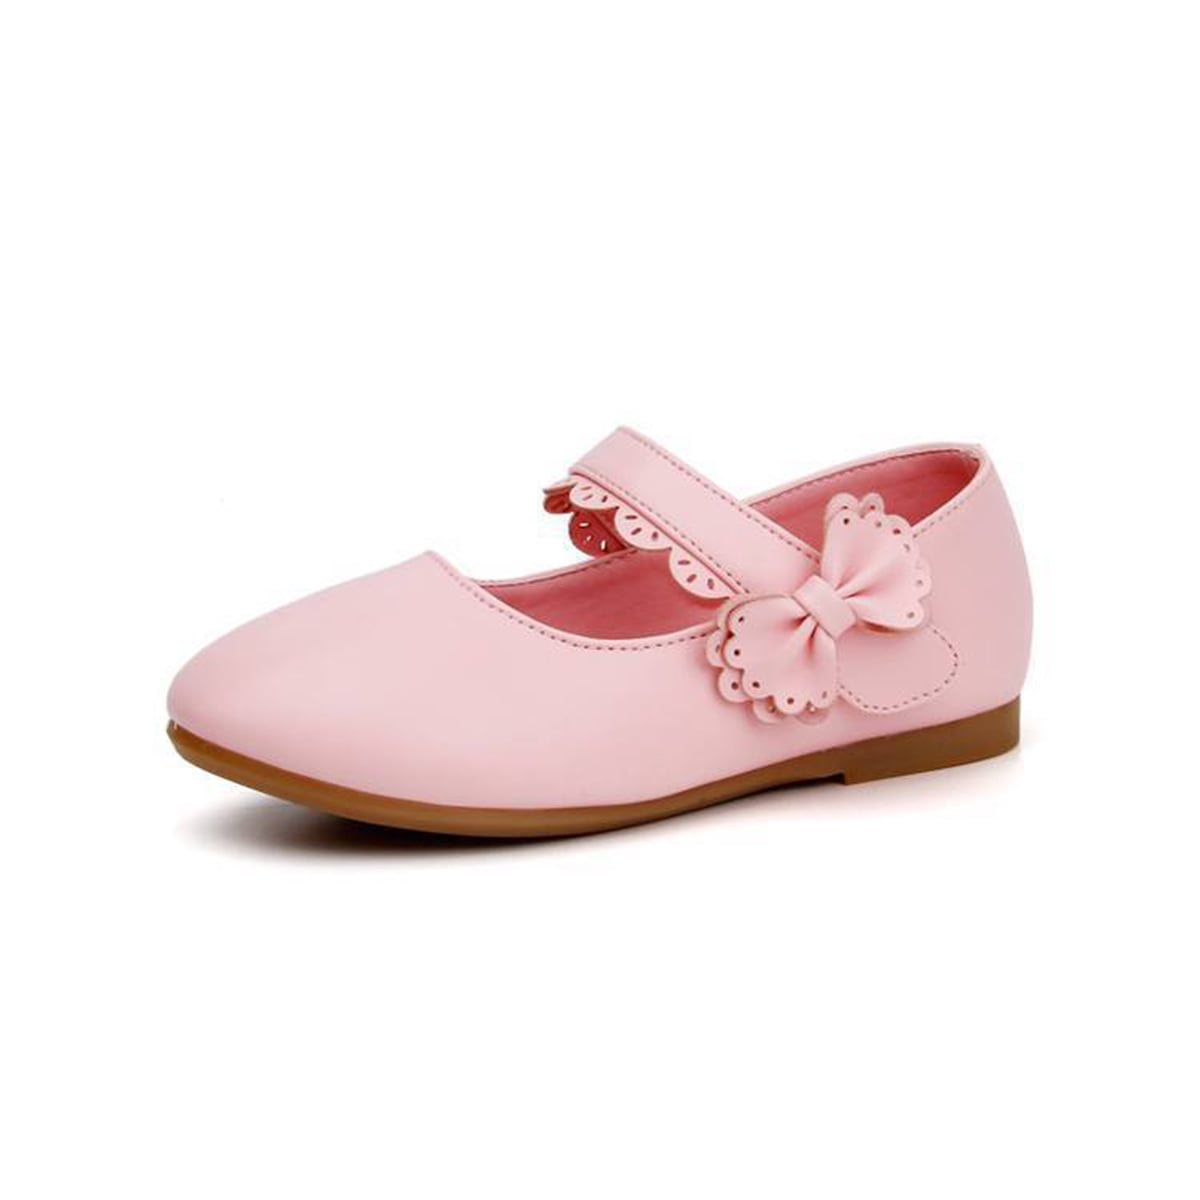 Girls Infants Kids Wedding Party Mary Jane Shoes Burgundy Patent Bow Uk Sizes